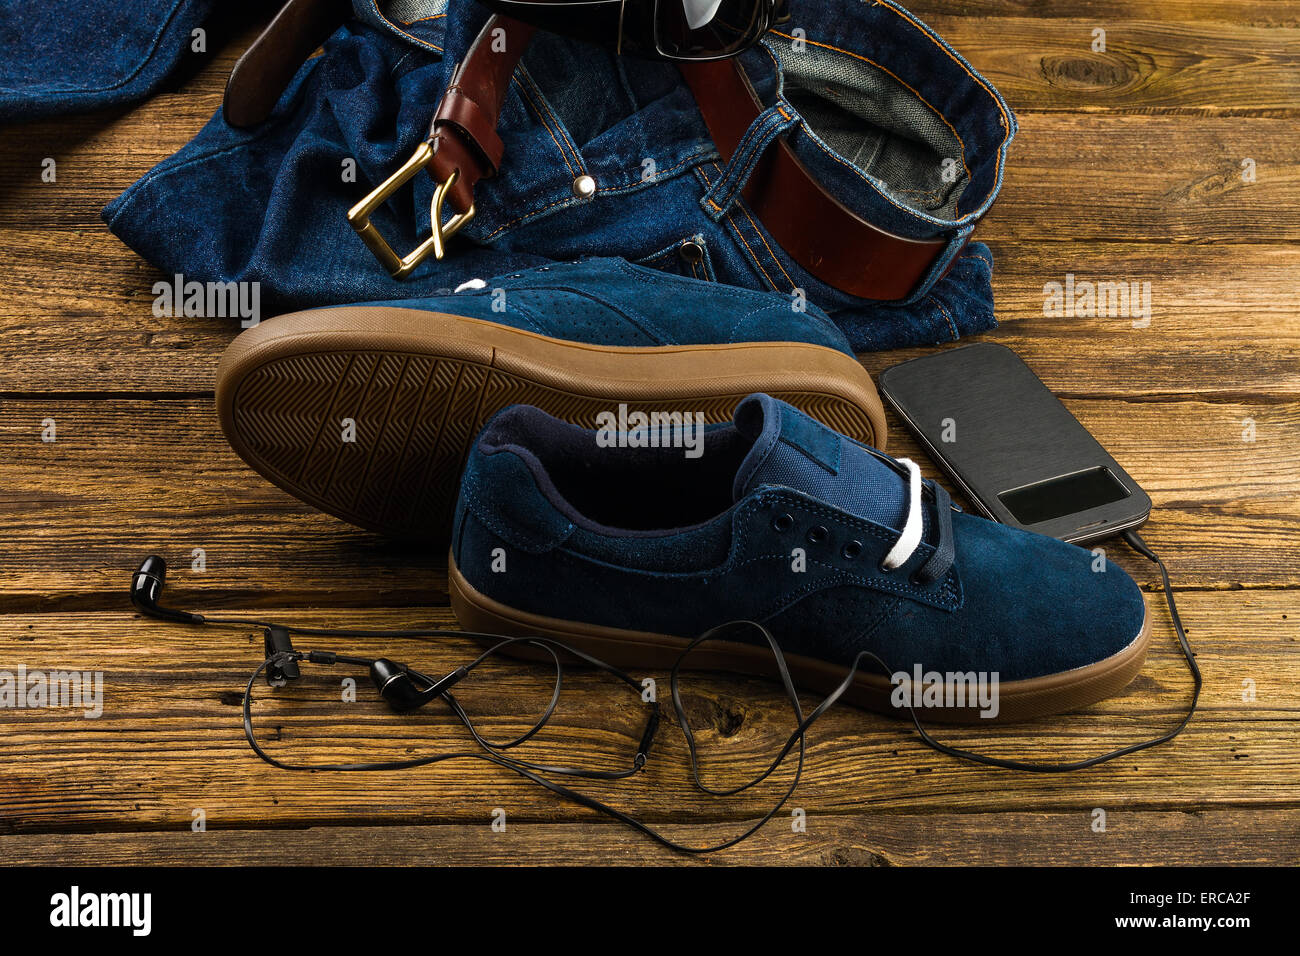 dunkel blau Herren Schuhe, Jeans, Smartphone und Zubehör auf hölzernen  Hintergrund Stockfotografie - Alamy